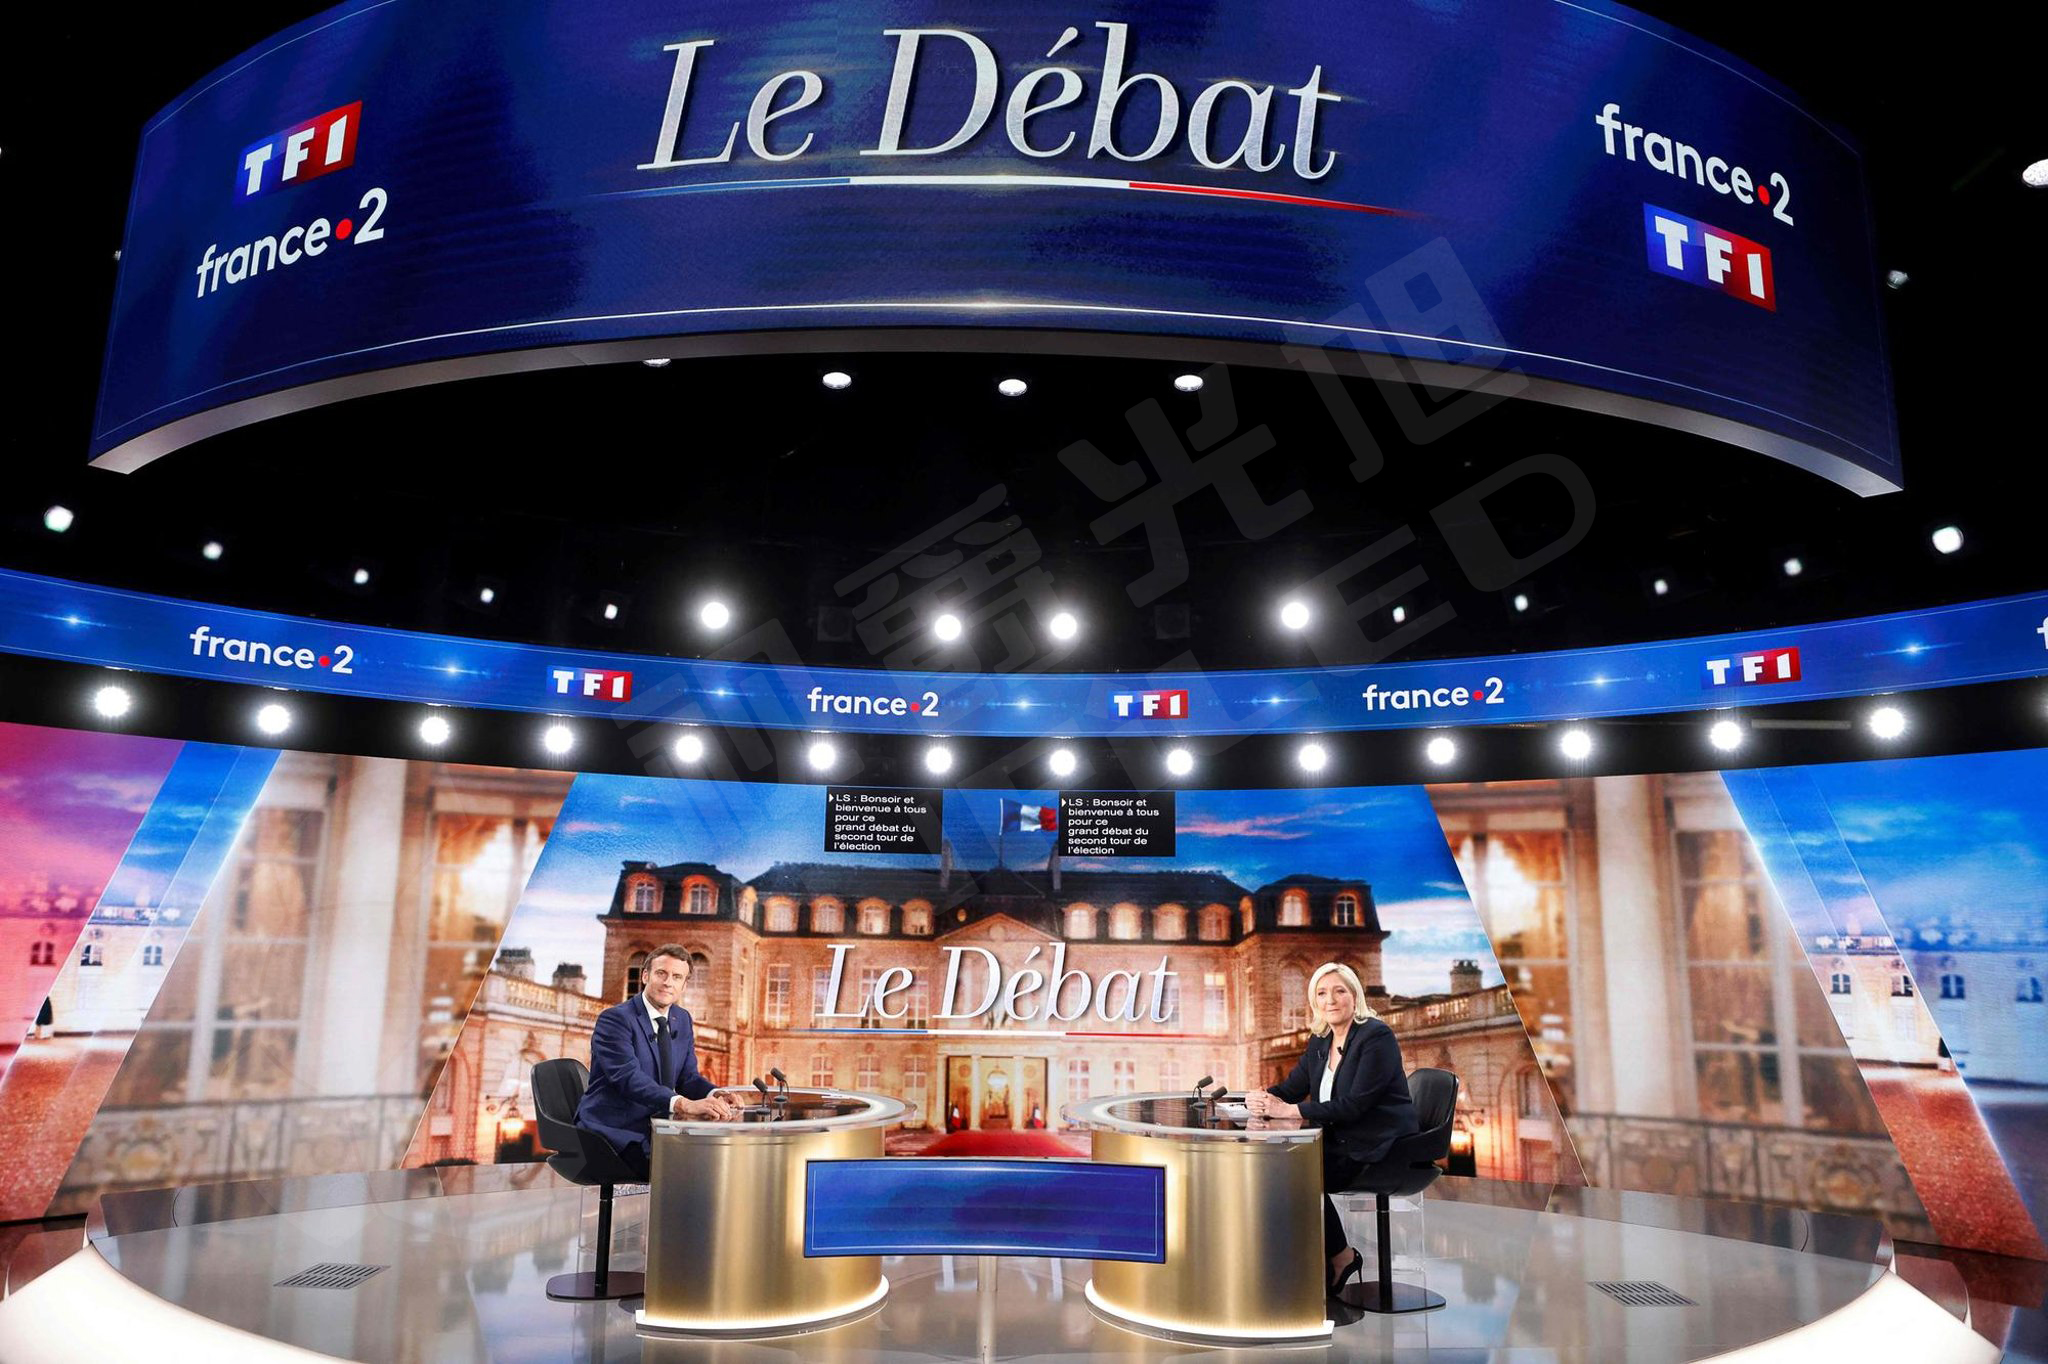 视爵光旭为2022法国总统大选电视辩论舞台提供LED显示屏支持